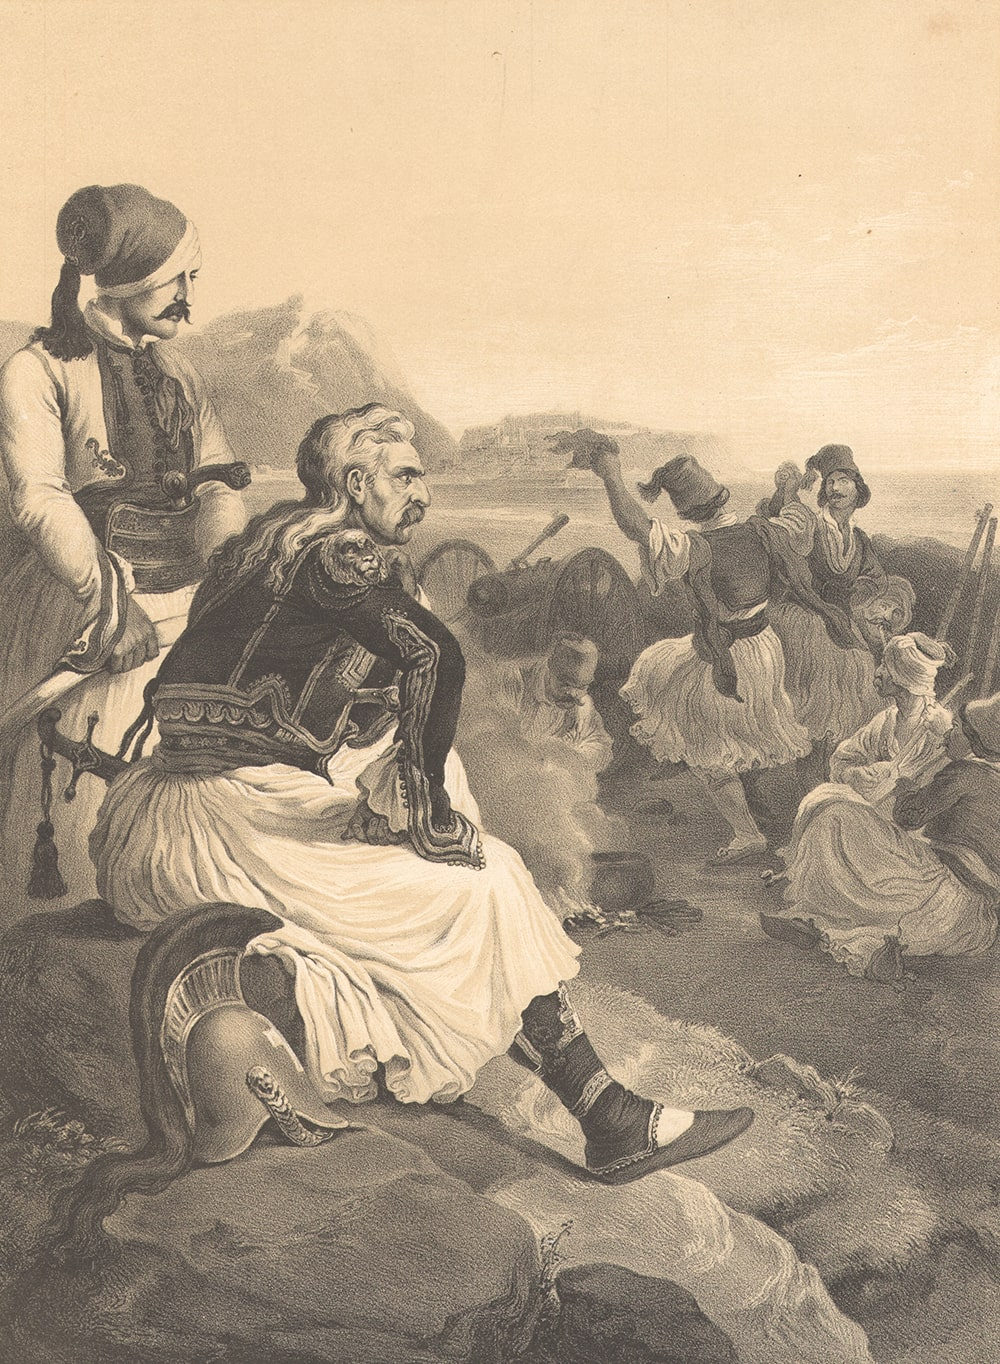 Ο Κολοκοτρώνης μετά τη μάχη εναντίον του στρατού του Δράμαλη πασά. Λιθογραφία του Peter von Hess [1852]